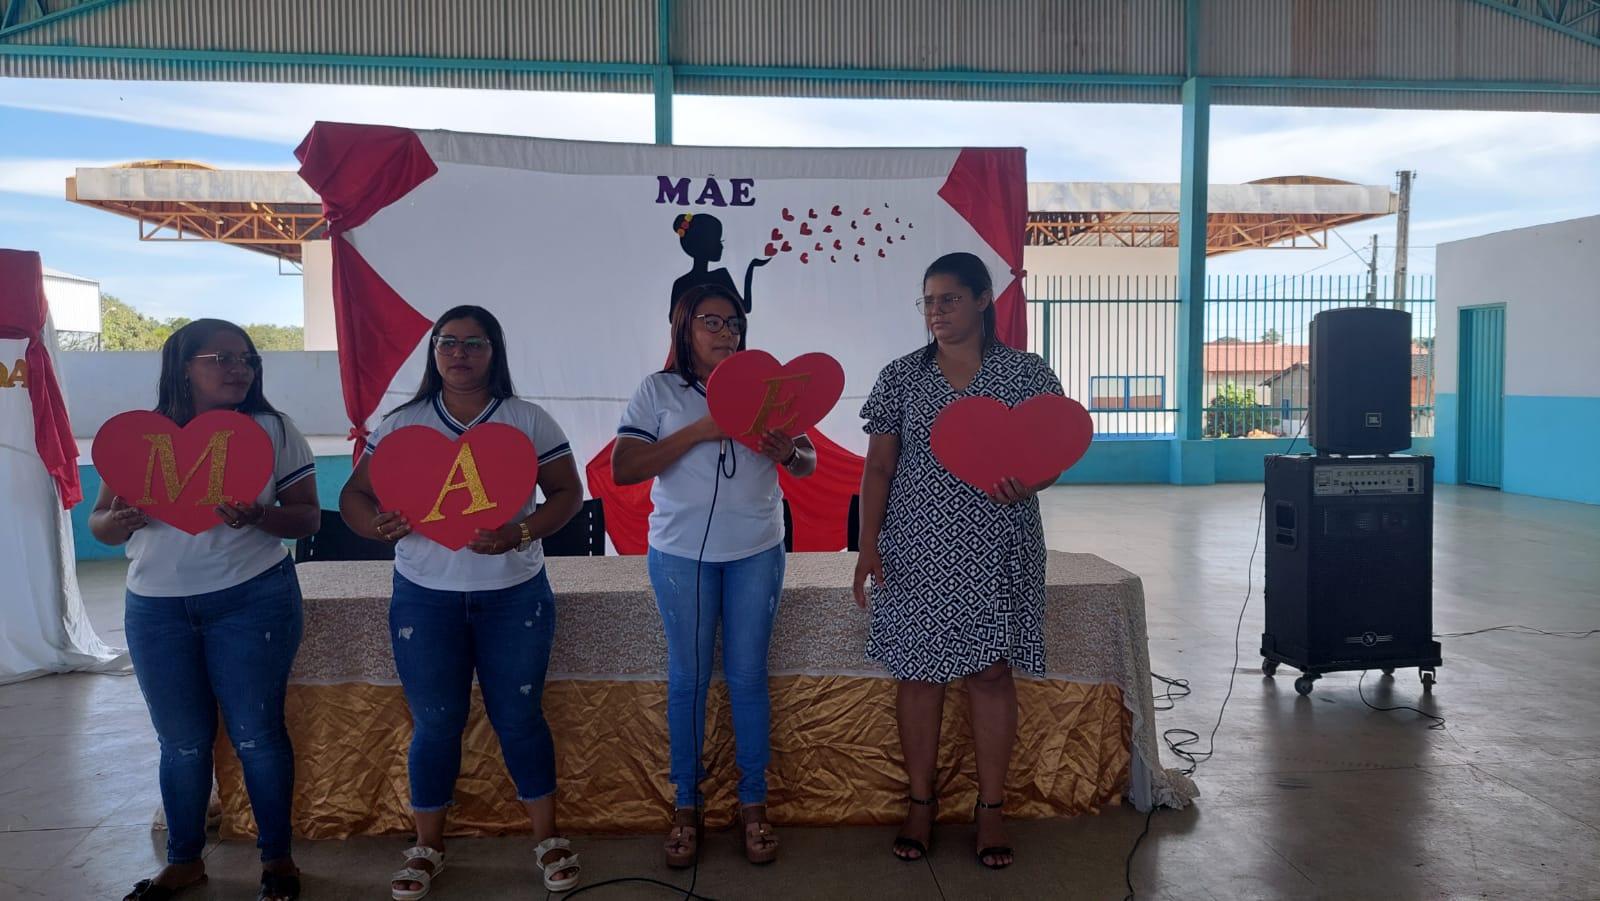 CRAS de Ananás Realiza Festa em Homenagem às Mães Assistidas pelos Programas Sociais